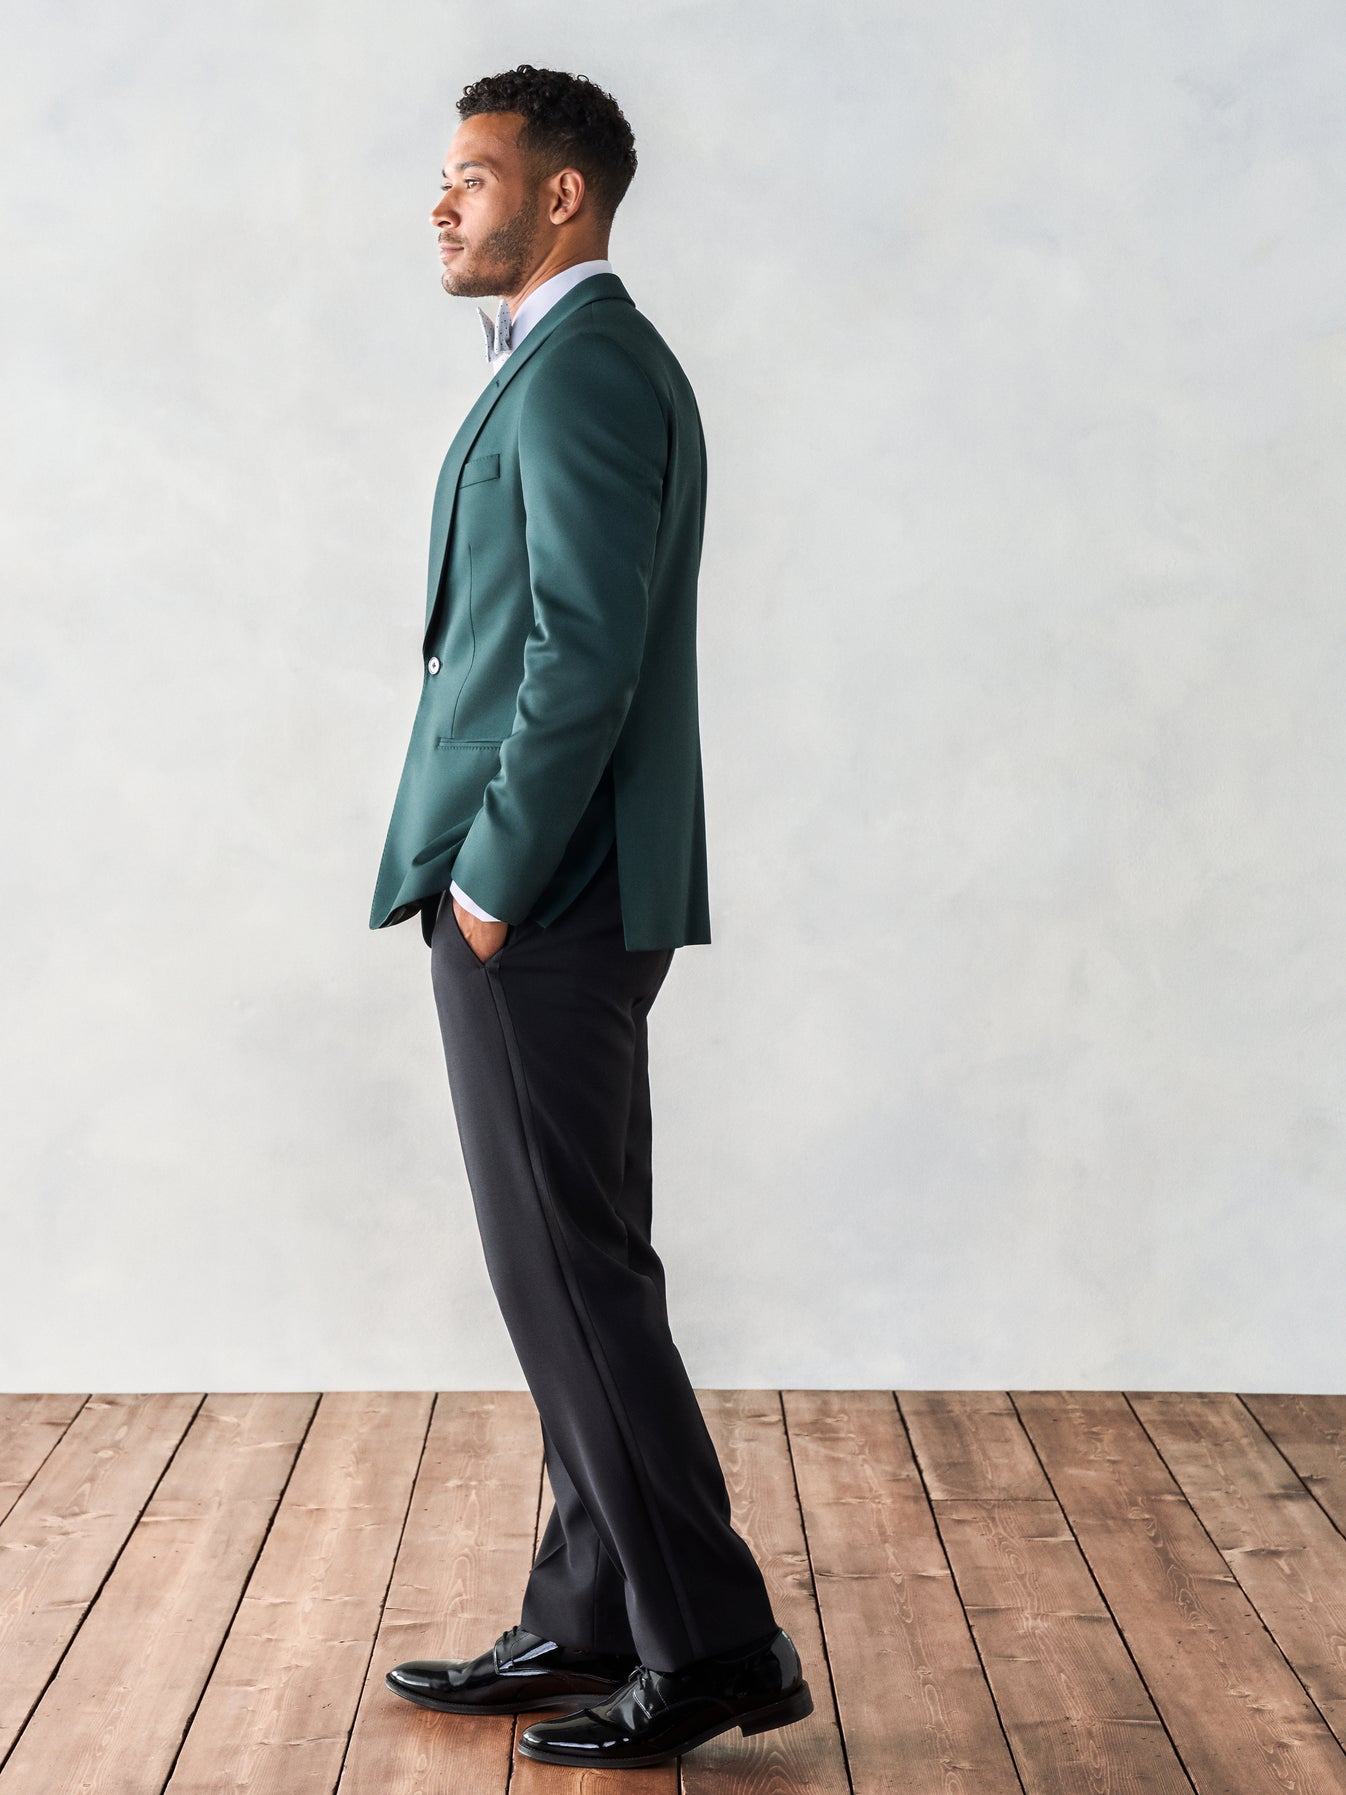 Emerald Shawl Tuxedo Jacket